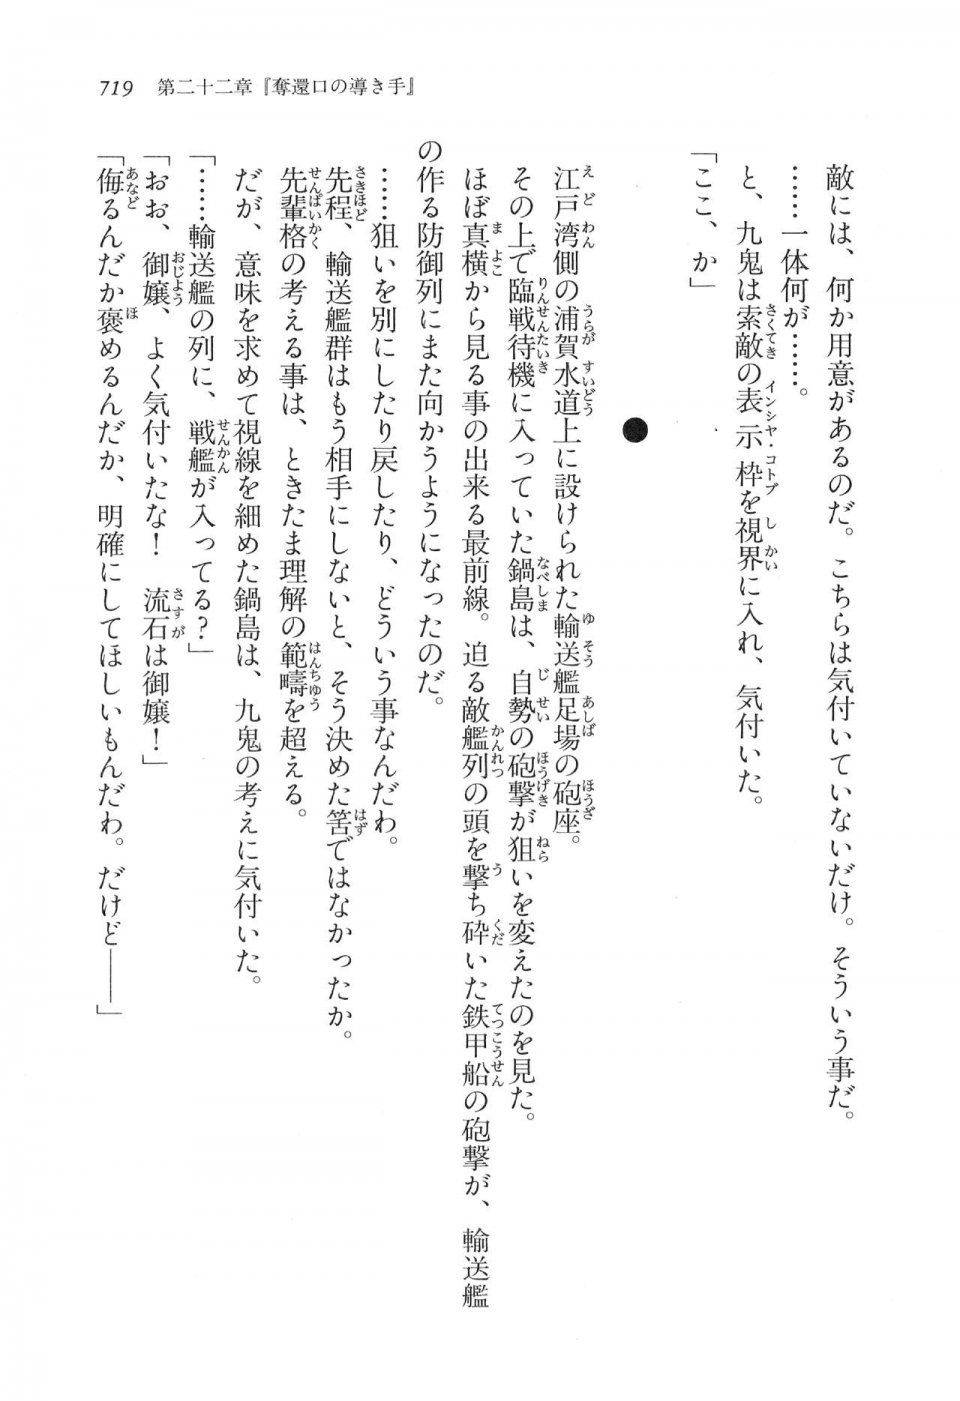 Kyoukai Senjou no Horizon LN Vol 16(7A) - Photo #719